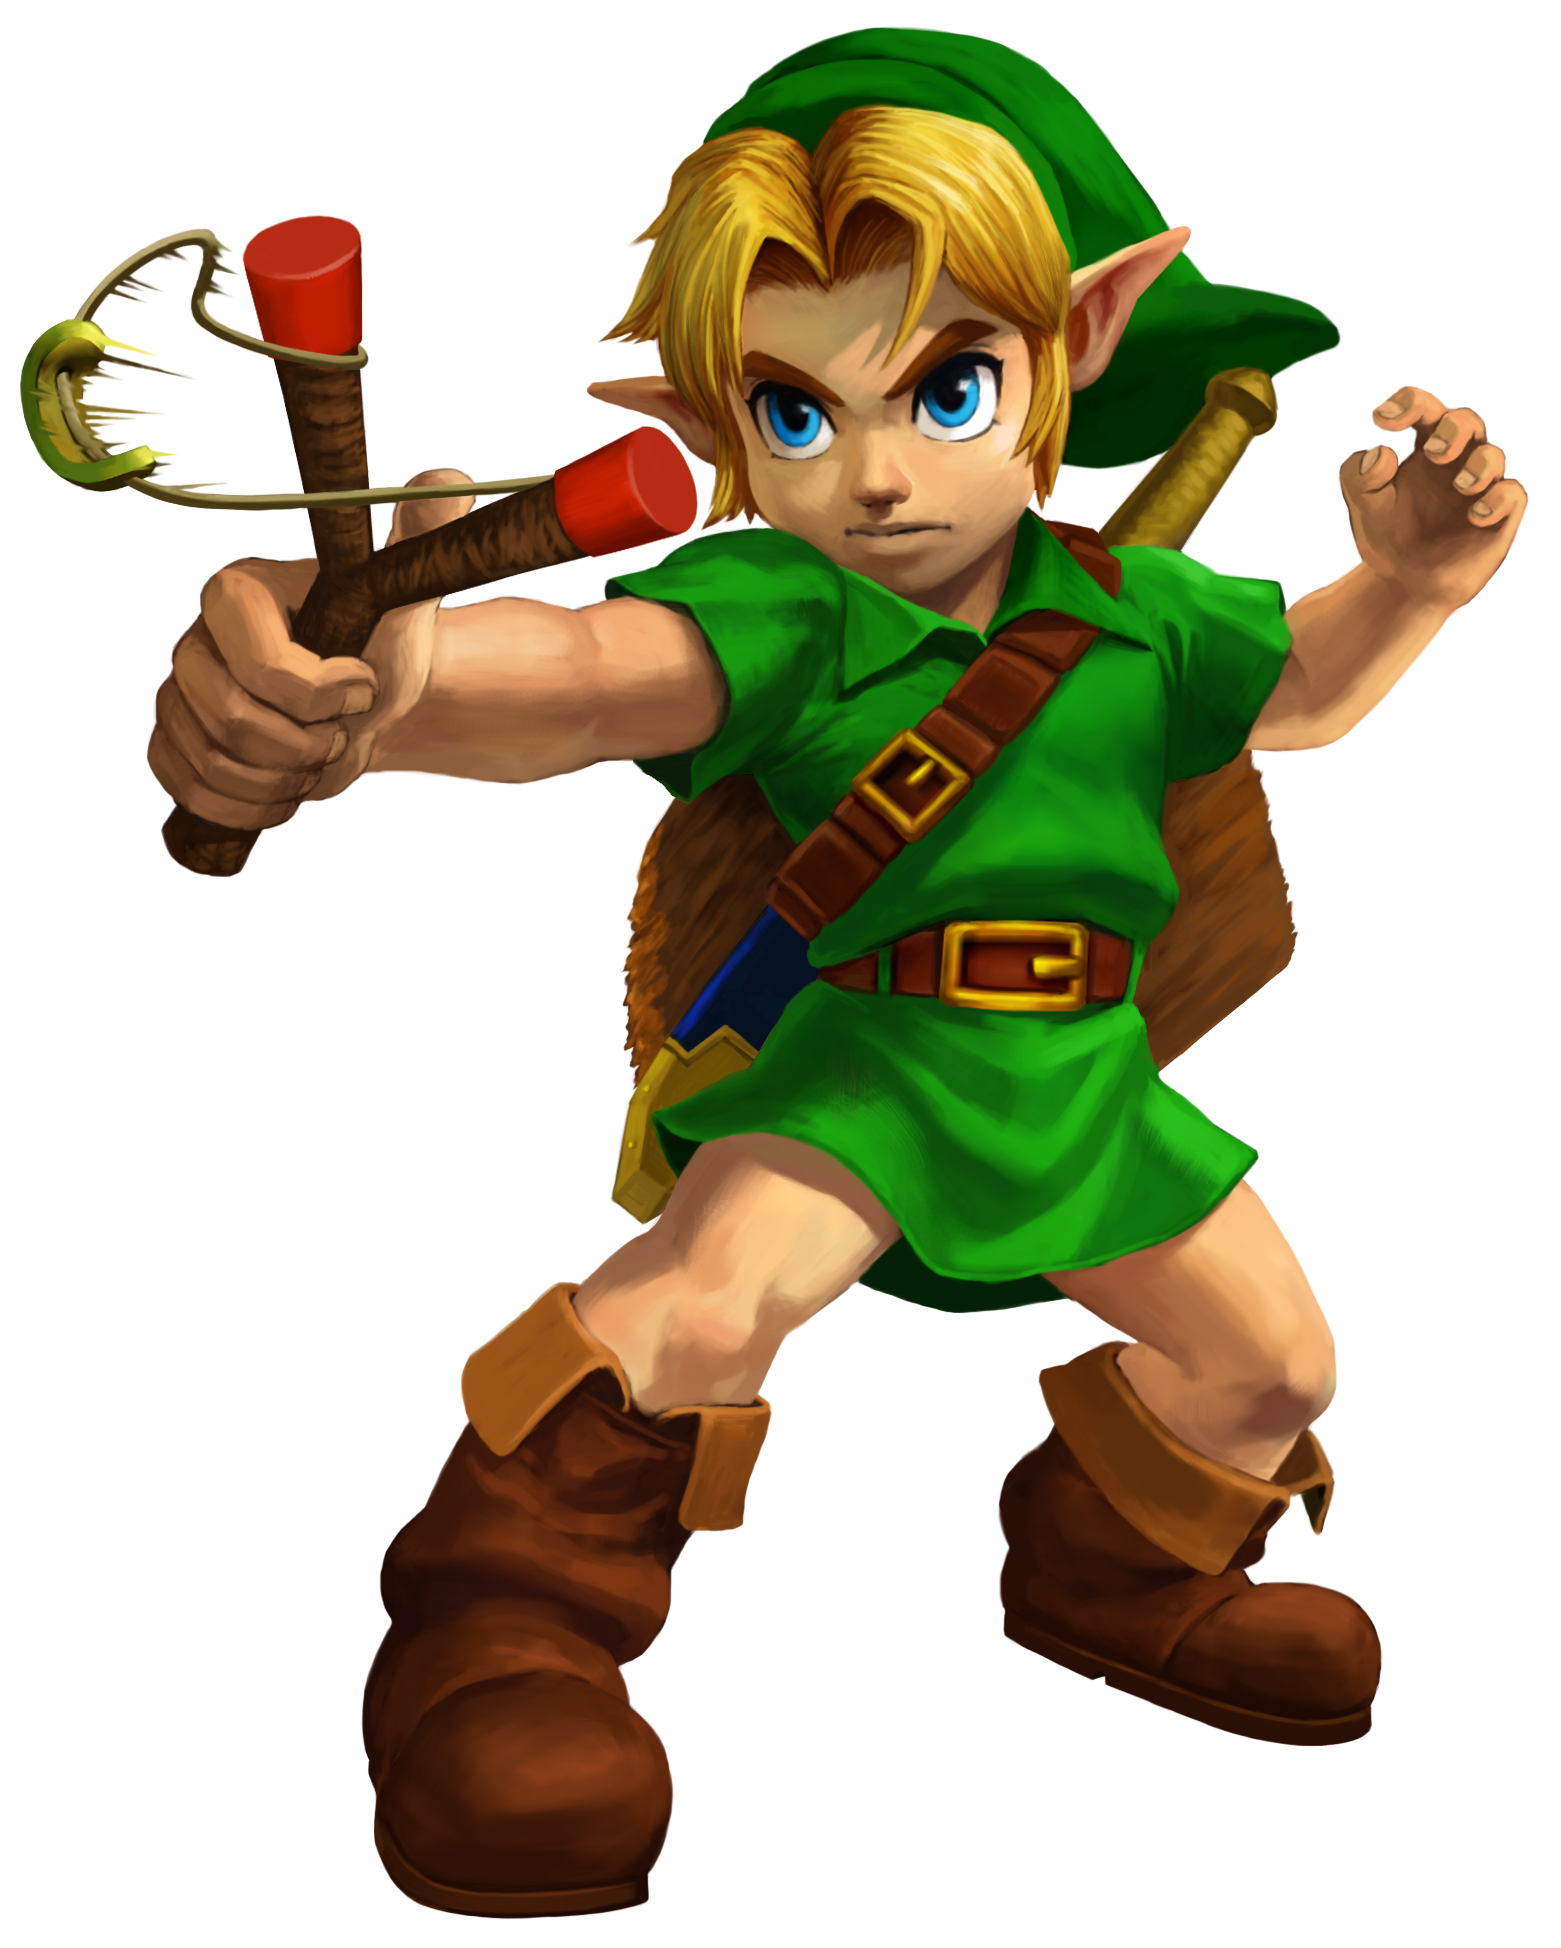 The legend of Zelda: Ocarina of Time render